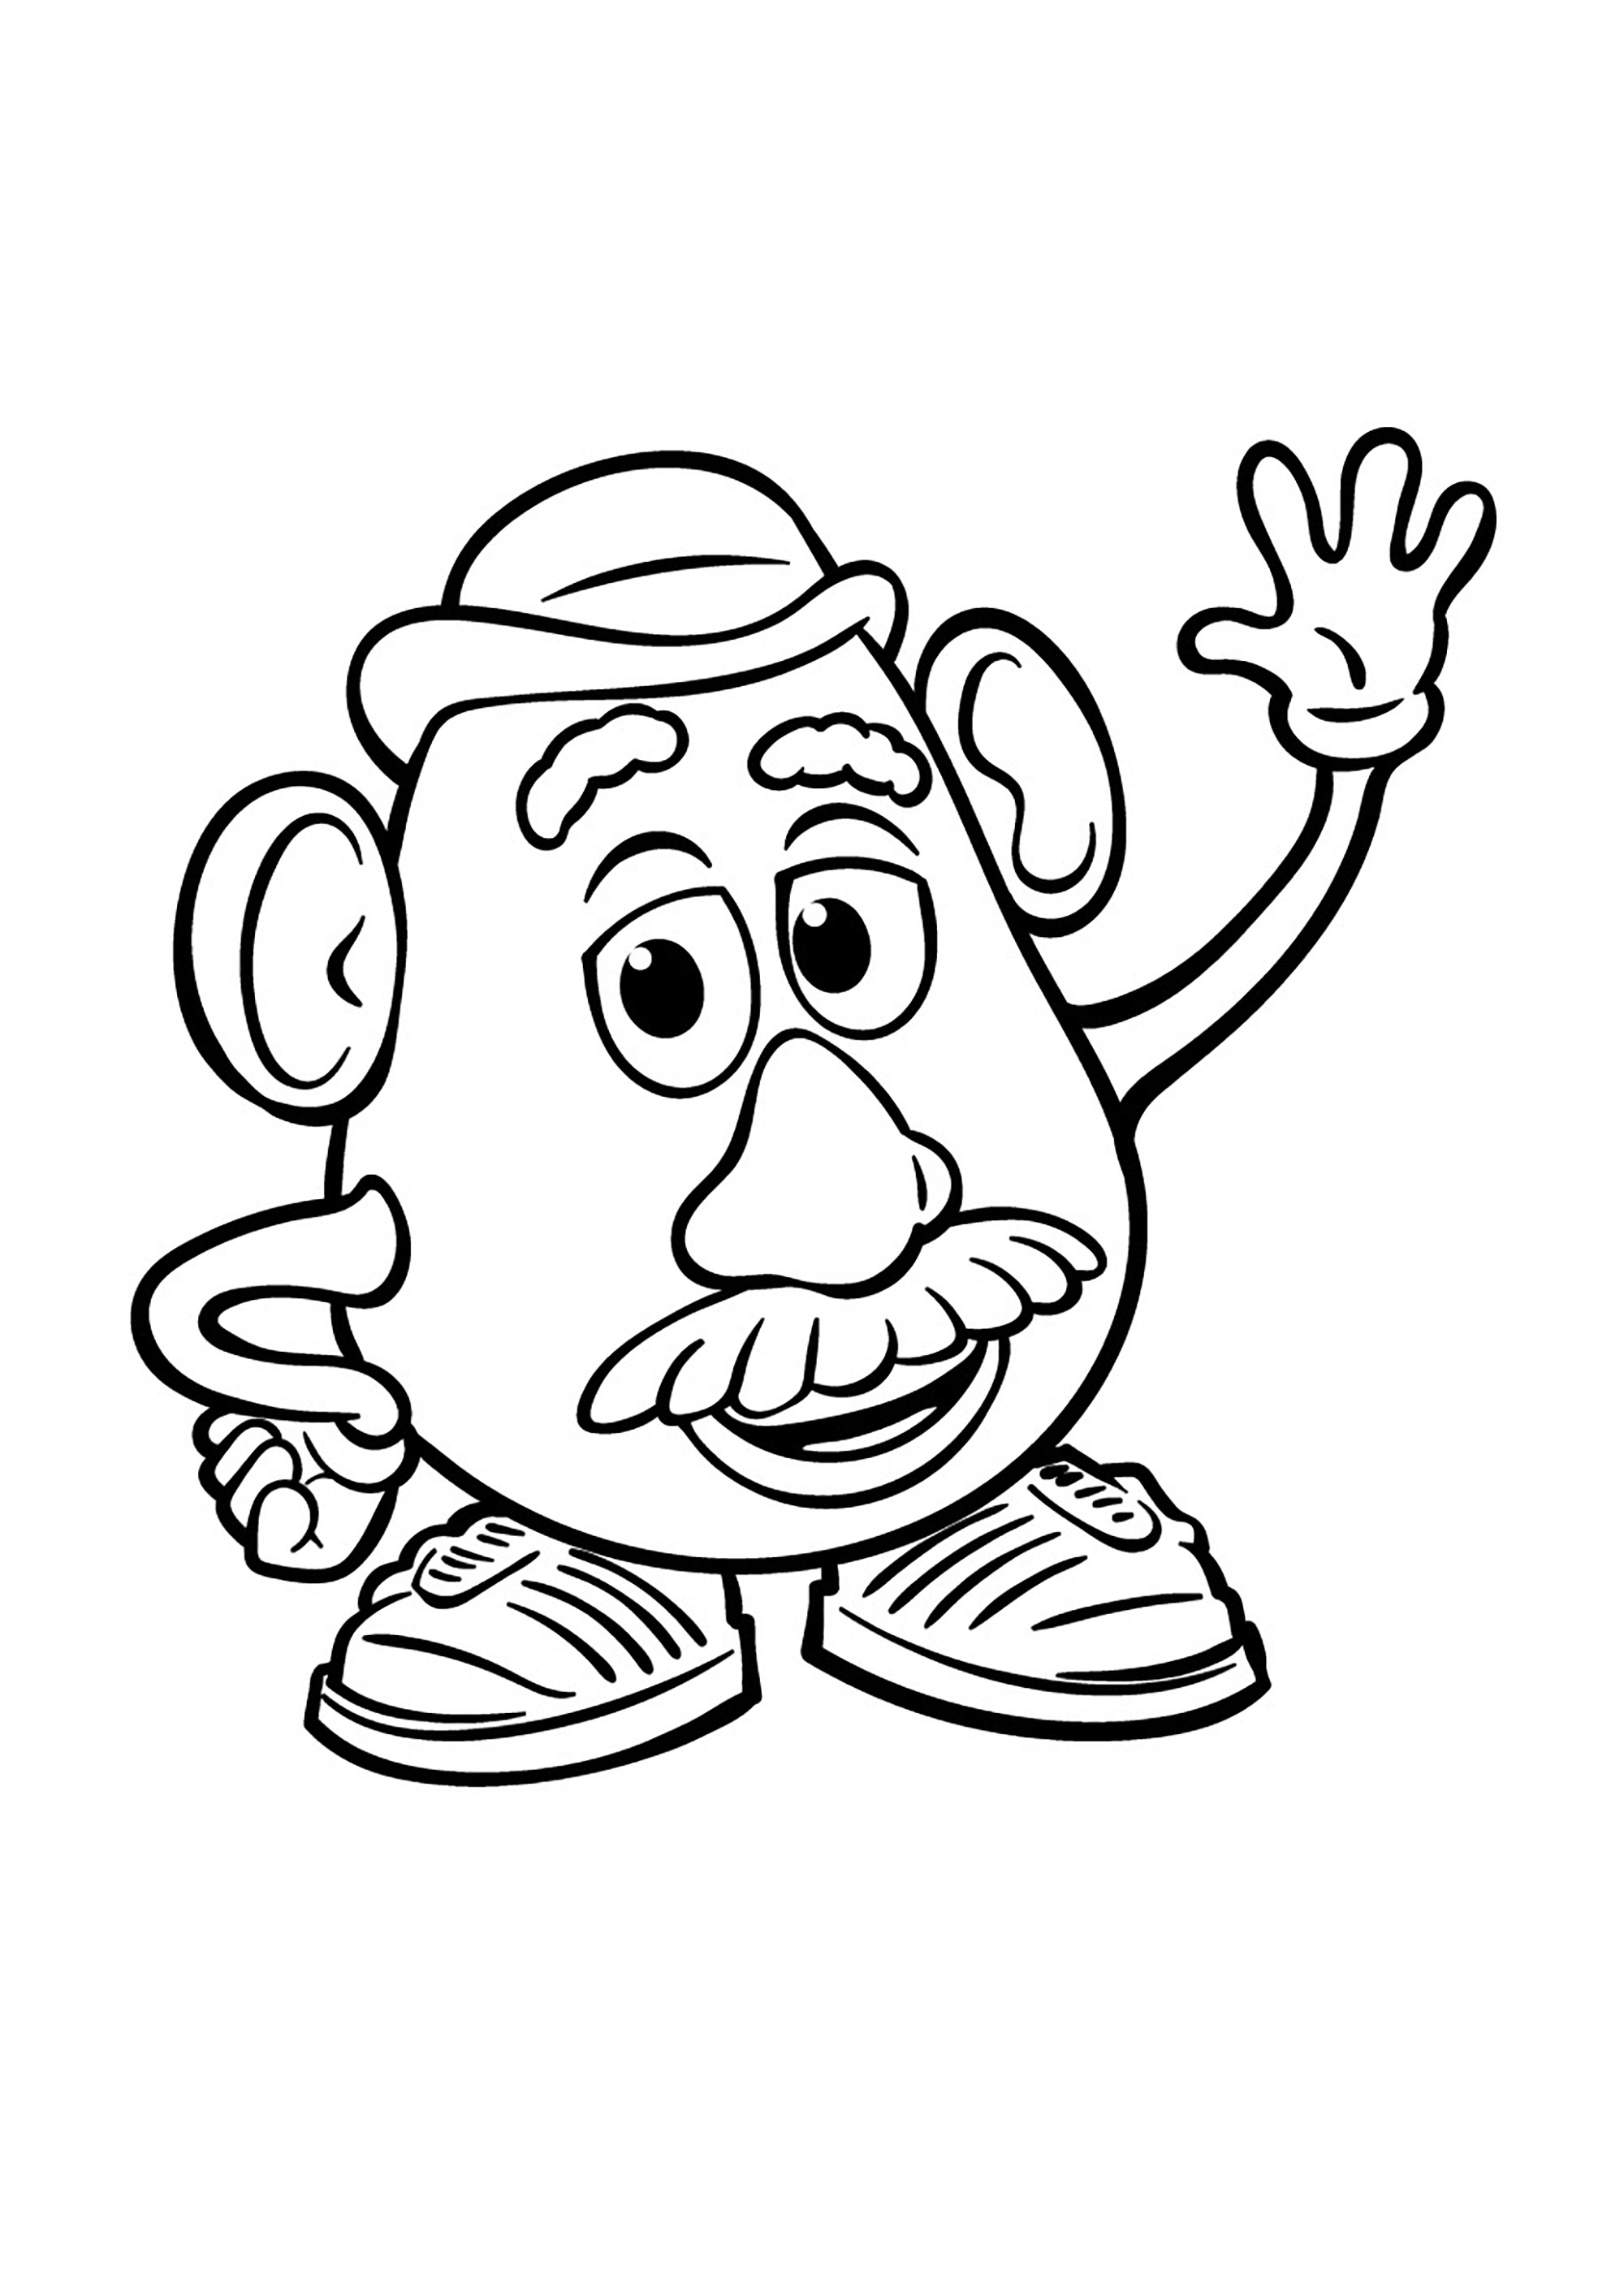 Sr. Cabeça de Batata, um dos brinquedos do Andy em Toy Story. O Sr. Batata foi inventado em 1949. O objetivo do seu criador (George Lerner) era simples: fazer com que as crianças adorassem os legumes. Para o efeito, criou um conjunto de 28 peças de plástico (nariz, braços, pernas, etc.) que foram inicialmente distribuídas em caixas de cereais, sem o corpo em forma de batata.